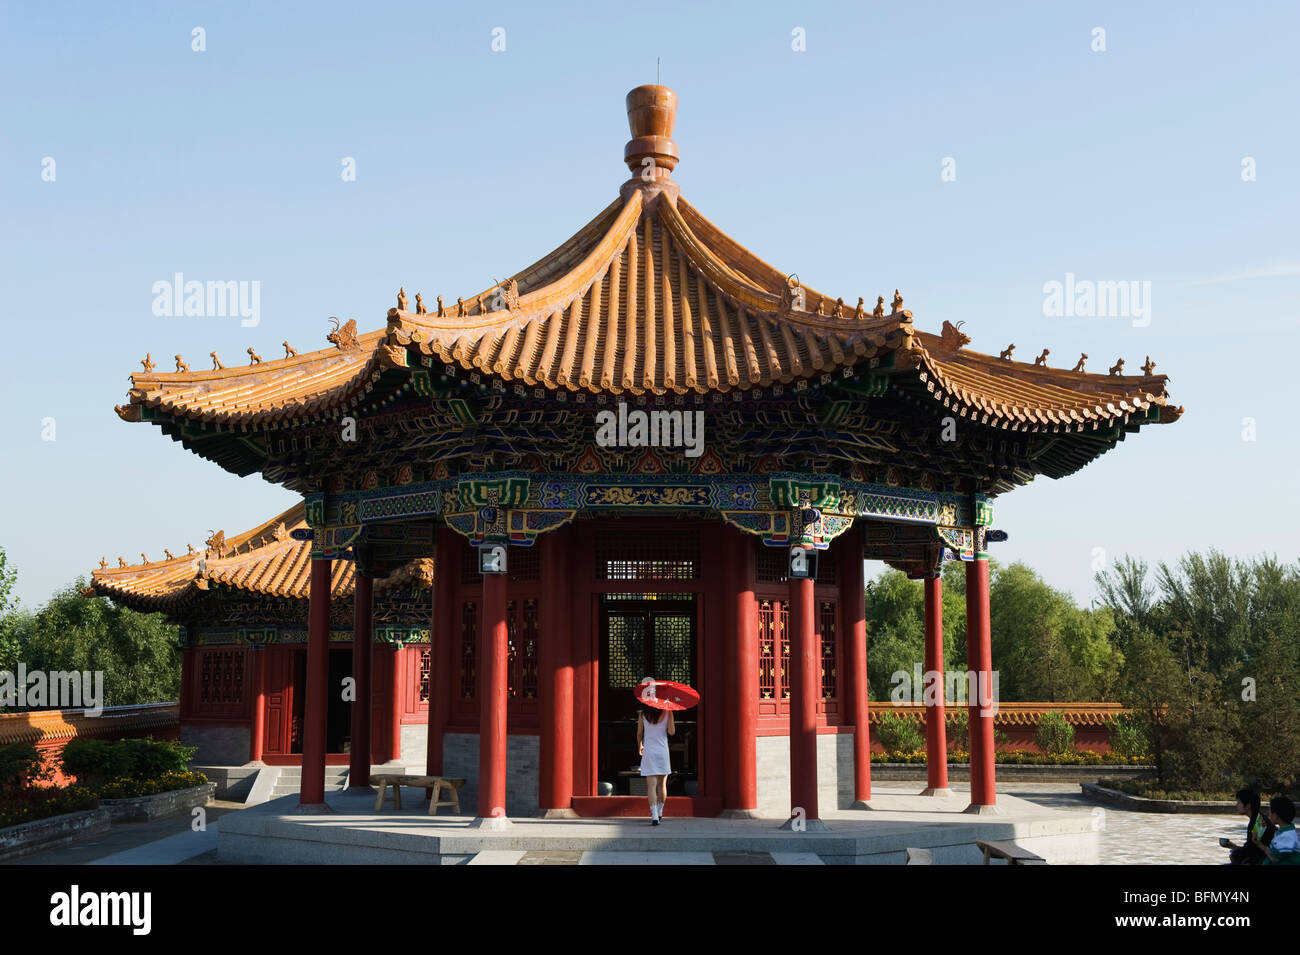 China, Beijing, ethnische Minderheiten Park, ein Mädchen mit Sonnenschirm  in einem Pavillon Stockfotografie - Alamy